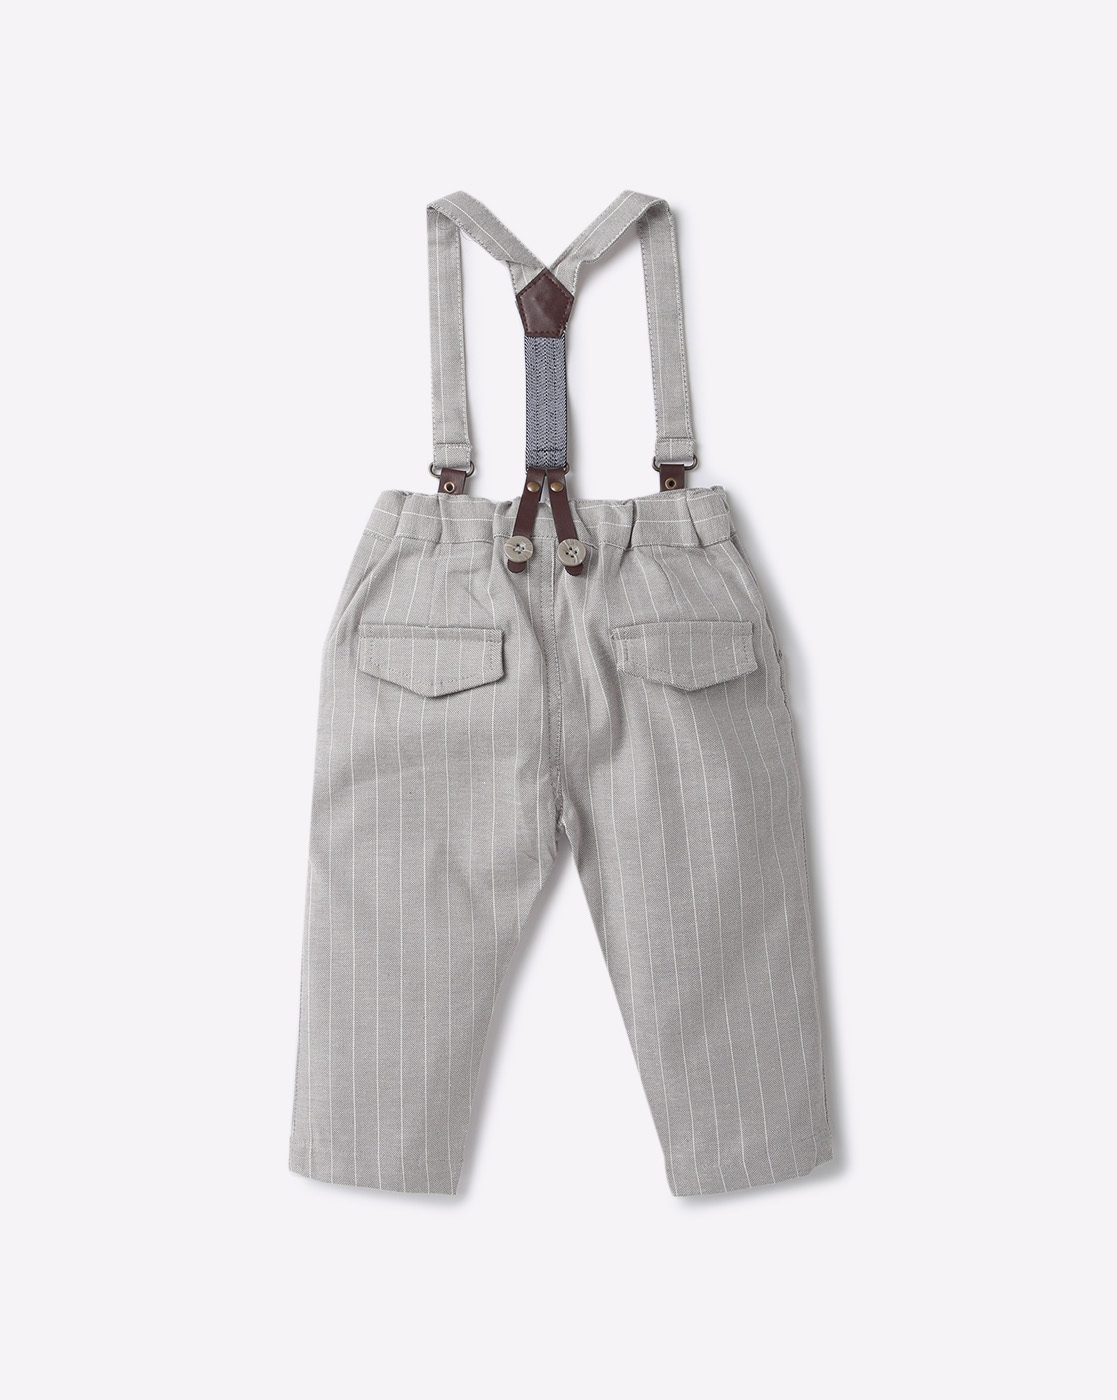 OshKosh B039gosh Toddler Boys039 Suspender Pants  Khaki  12M  eBay